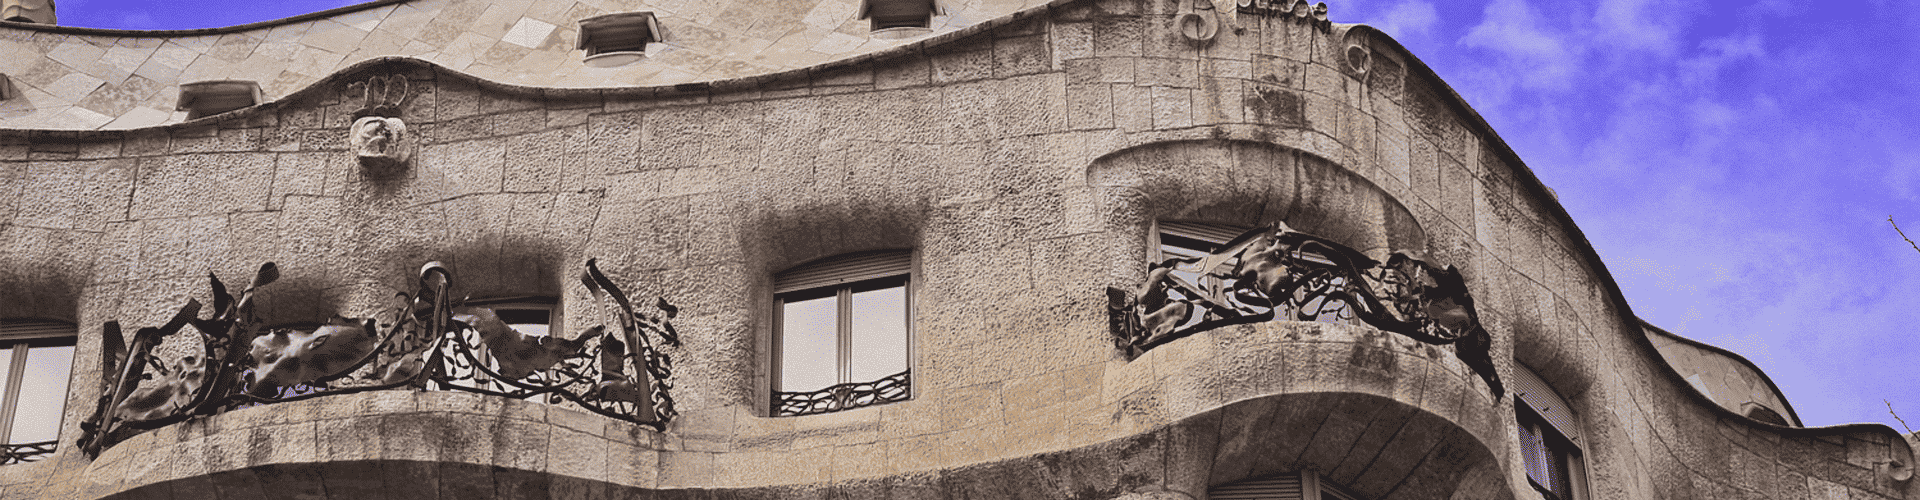 Free Gaudi & Modernism Tour Banner